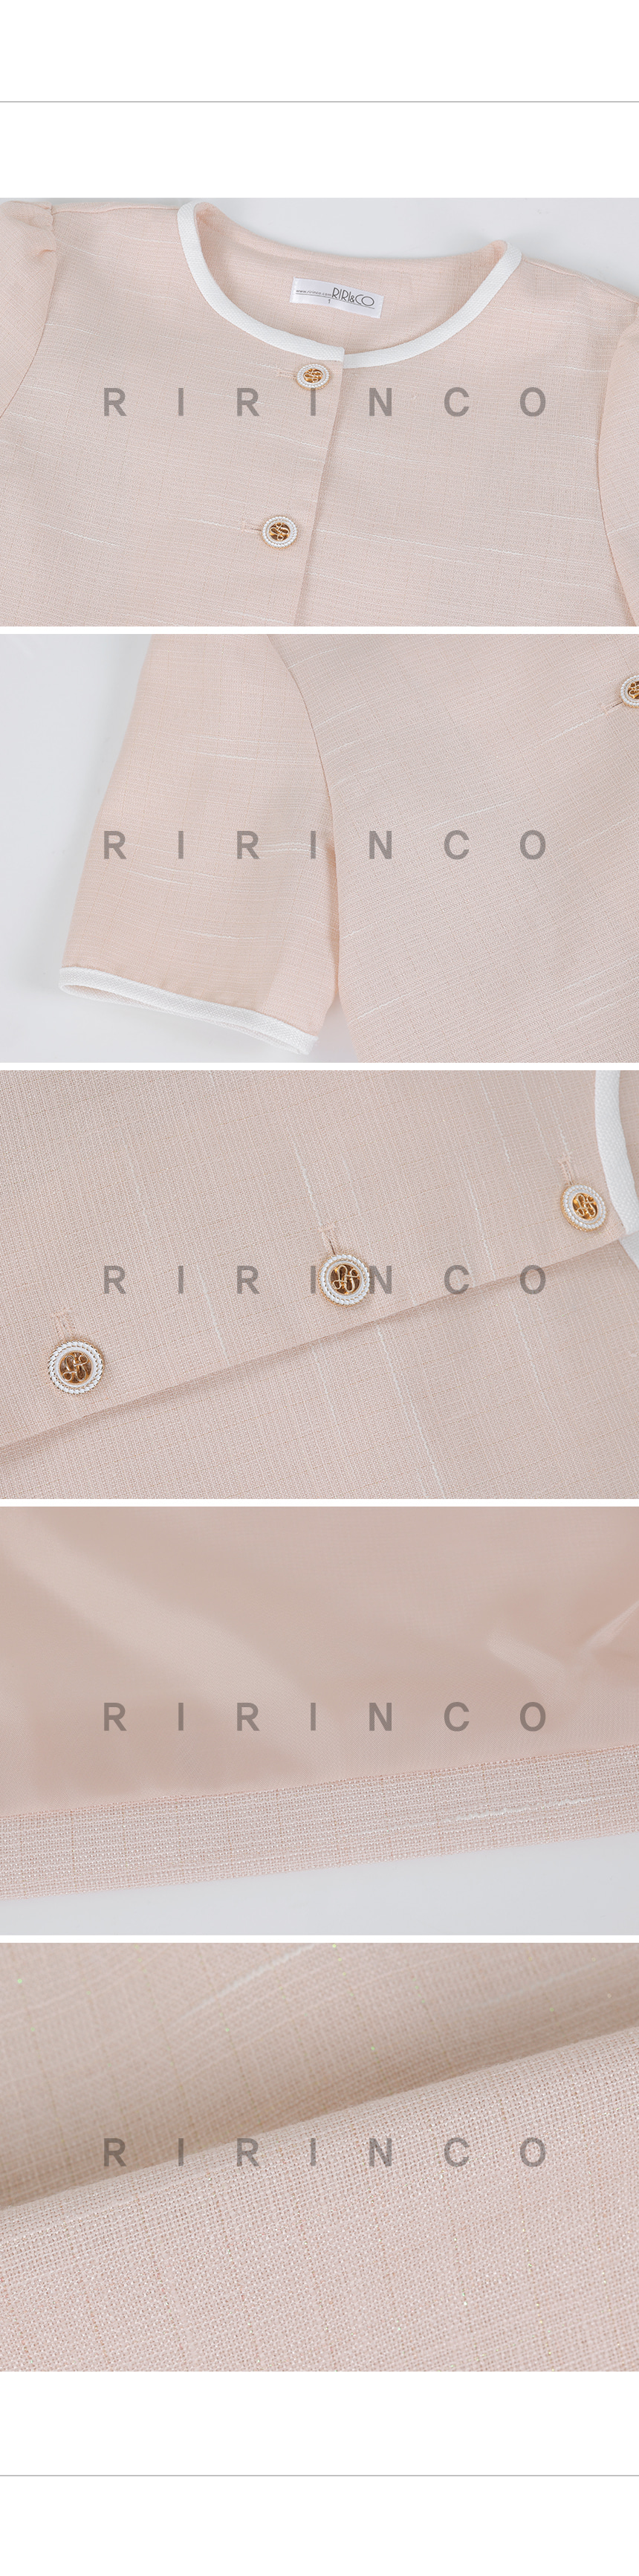 RIRINCO ツーピースツイード配色クロップド半袖ジャケット